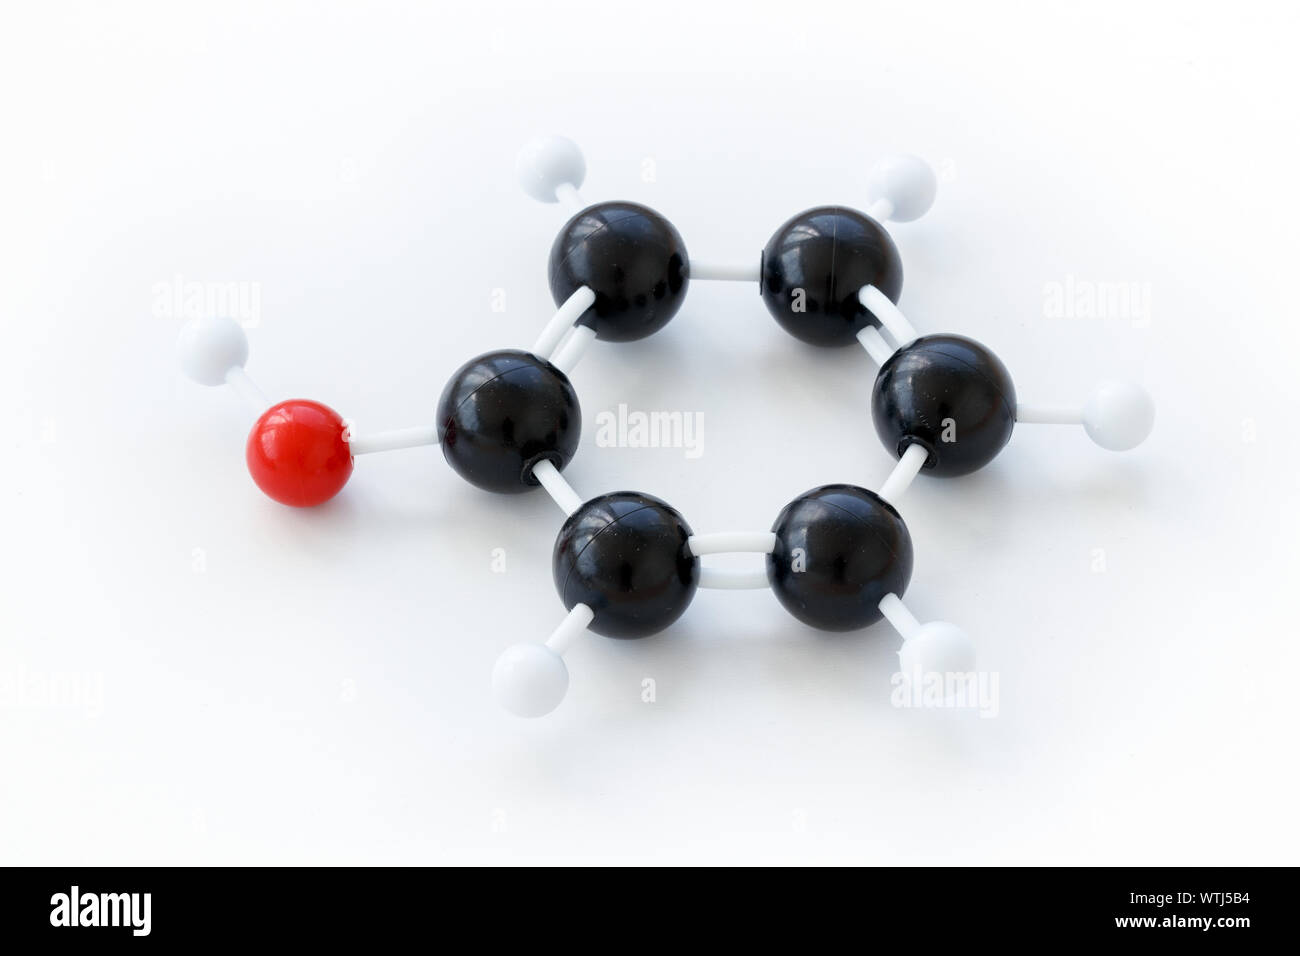 Balle en plastique et le bâton, modèle d'une molécule (phénol C6H5OH), illustré avec kekule structure sur un fond blanc. Banque D'Images